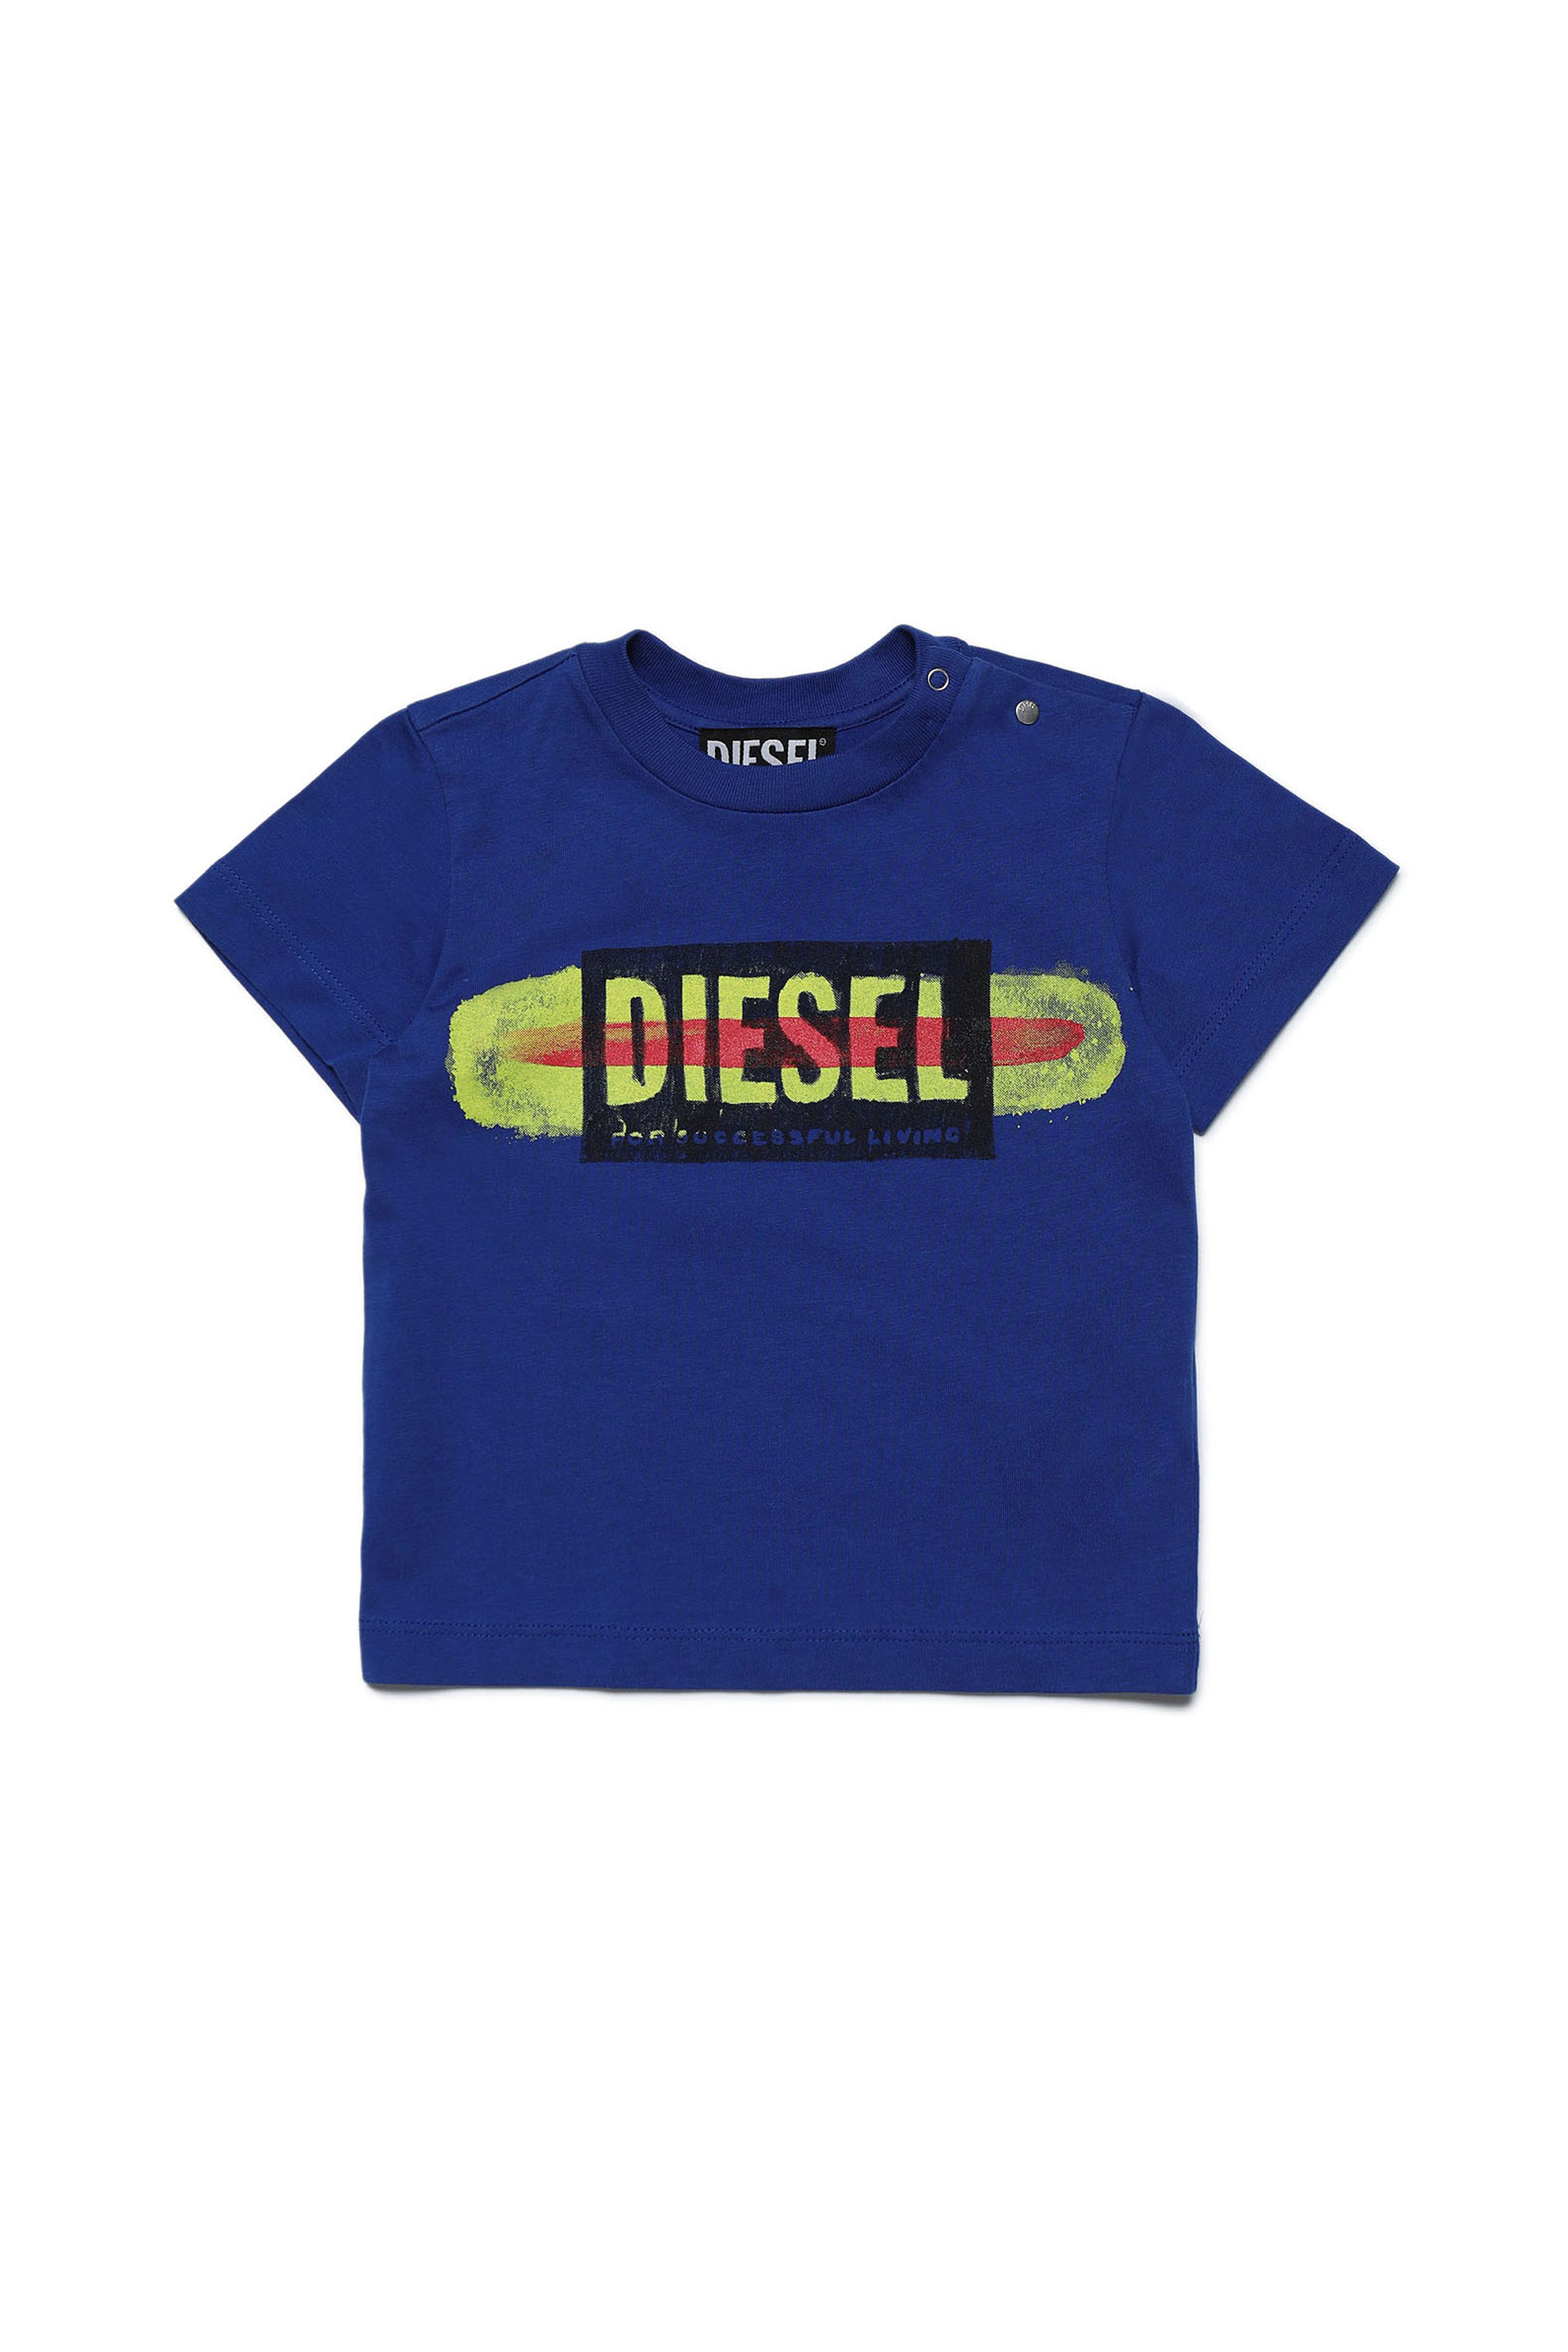 Diesel - TARYB, Bleu - Image 1